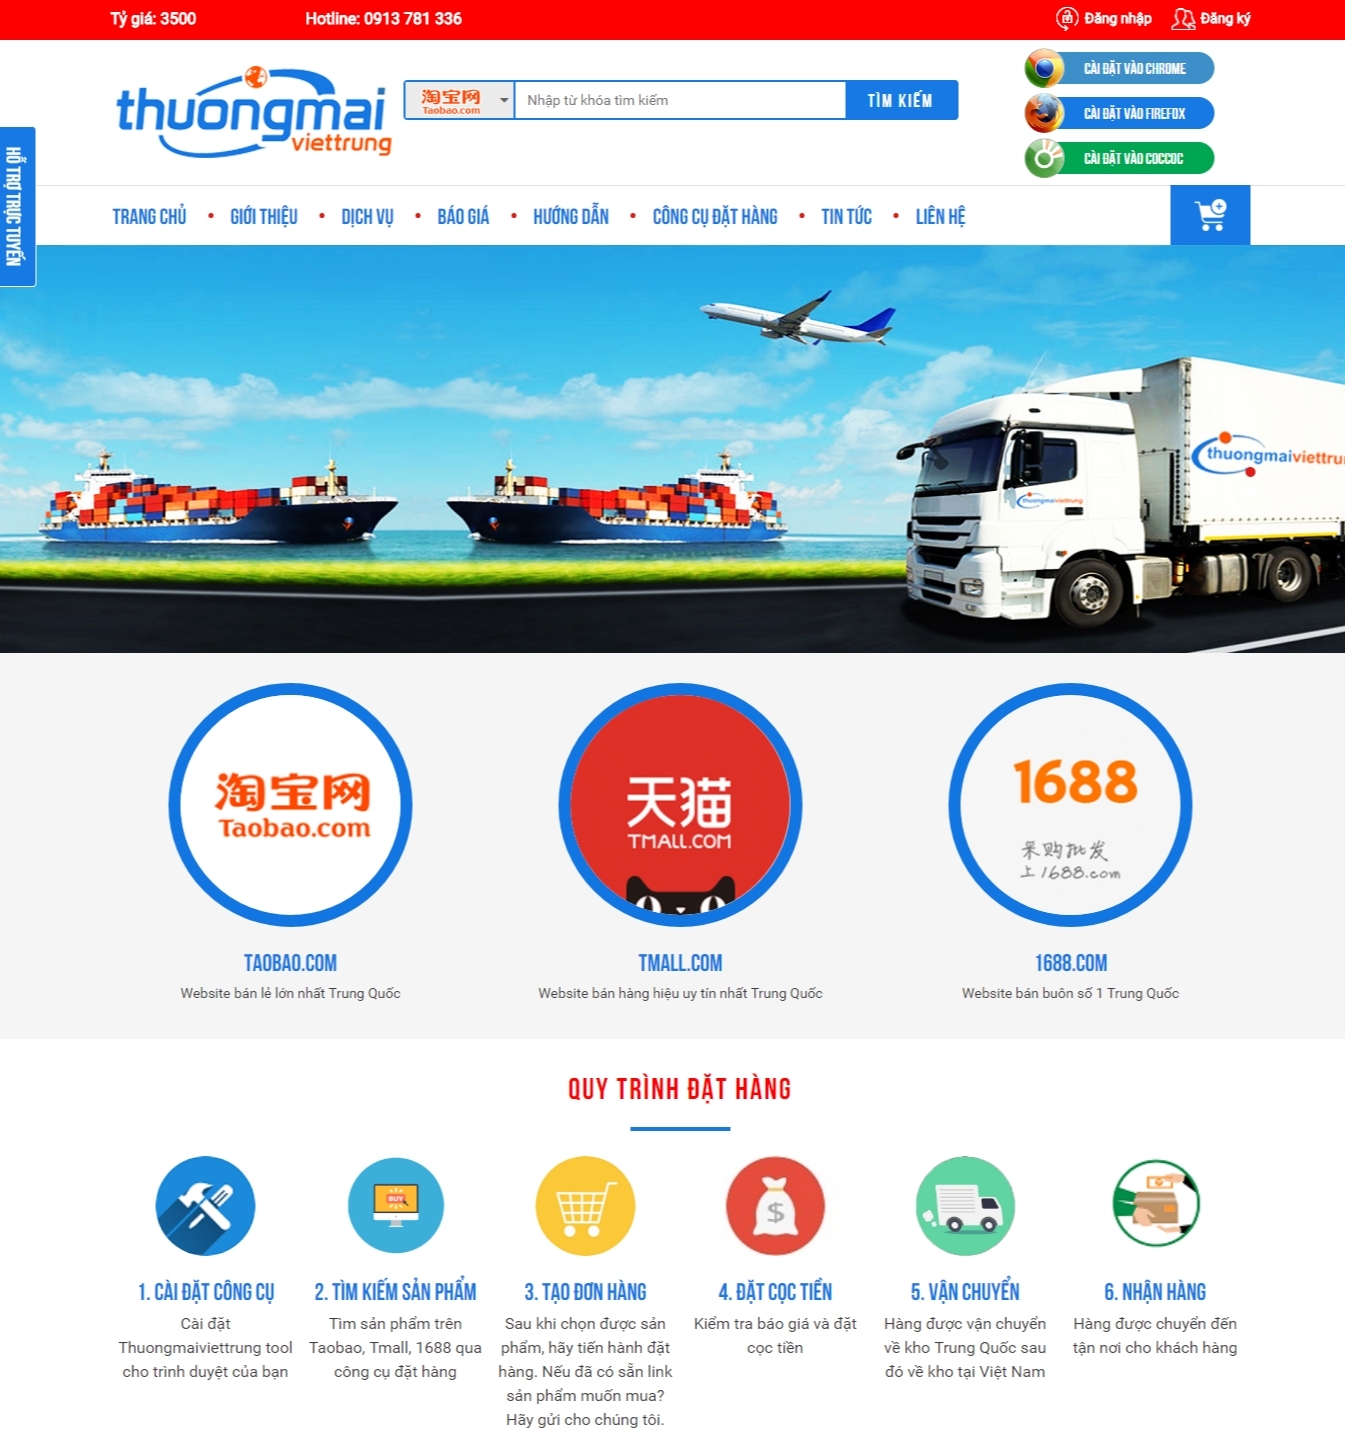 Thiết kế web giá rẻ công ty TNHH thương mại và xuất nhập khẩu Thanh Dũng